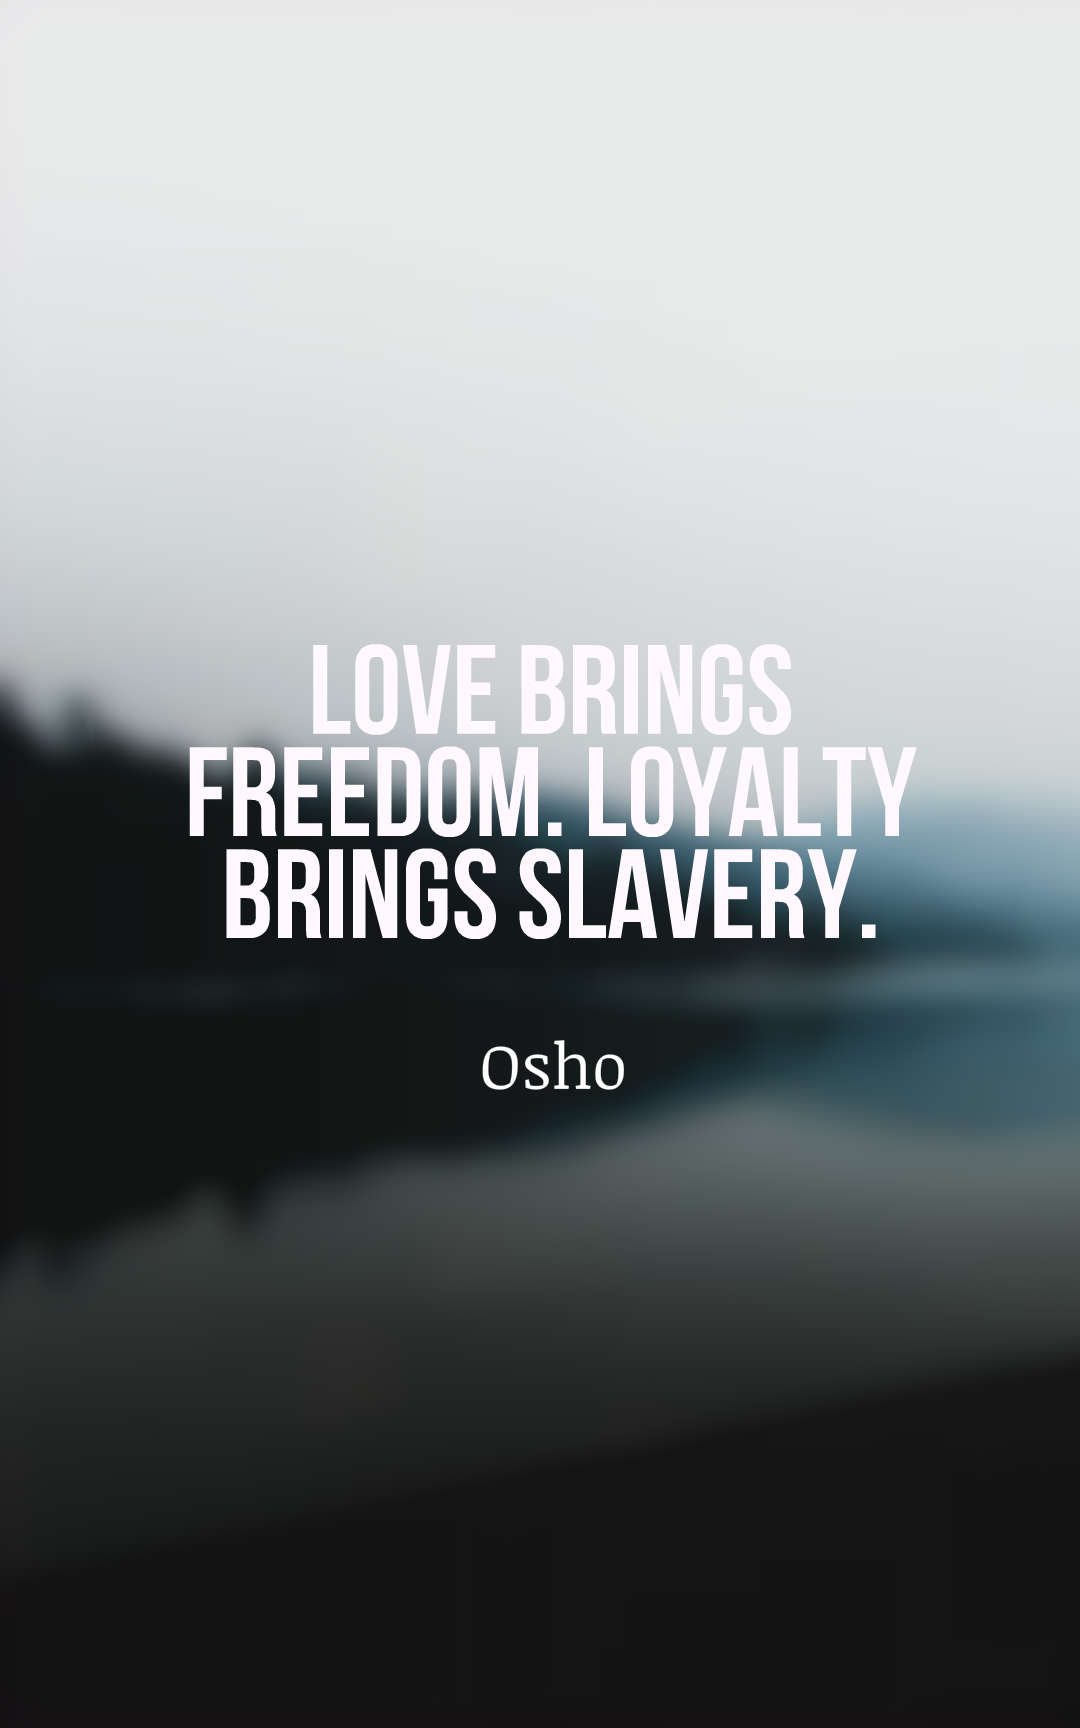 Love brings freedom. Loyalty brings slavery.